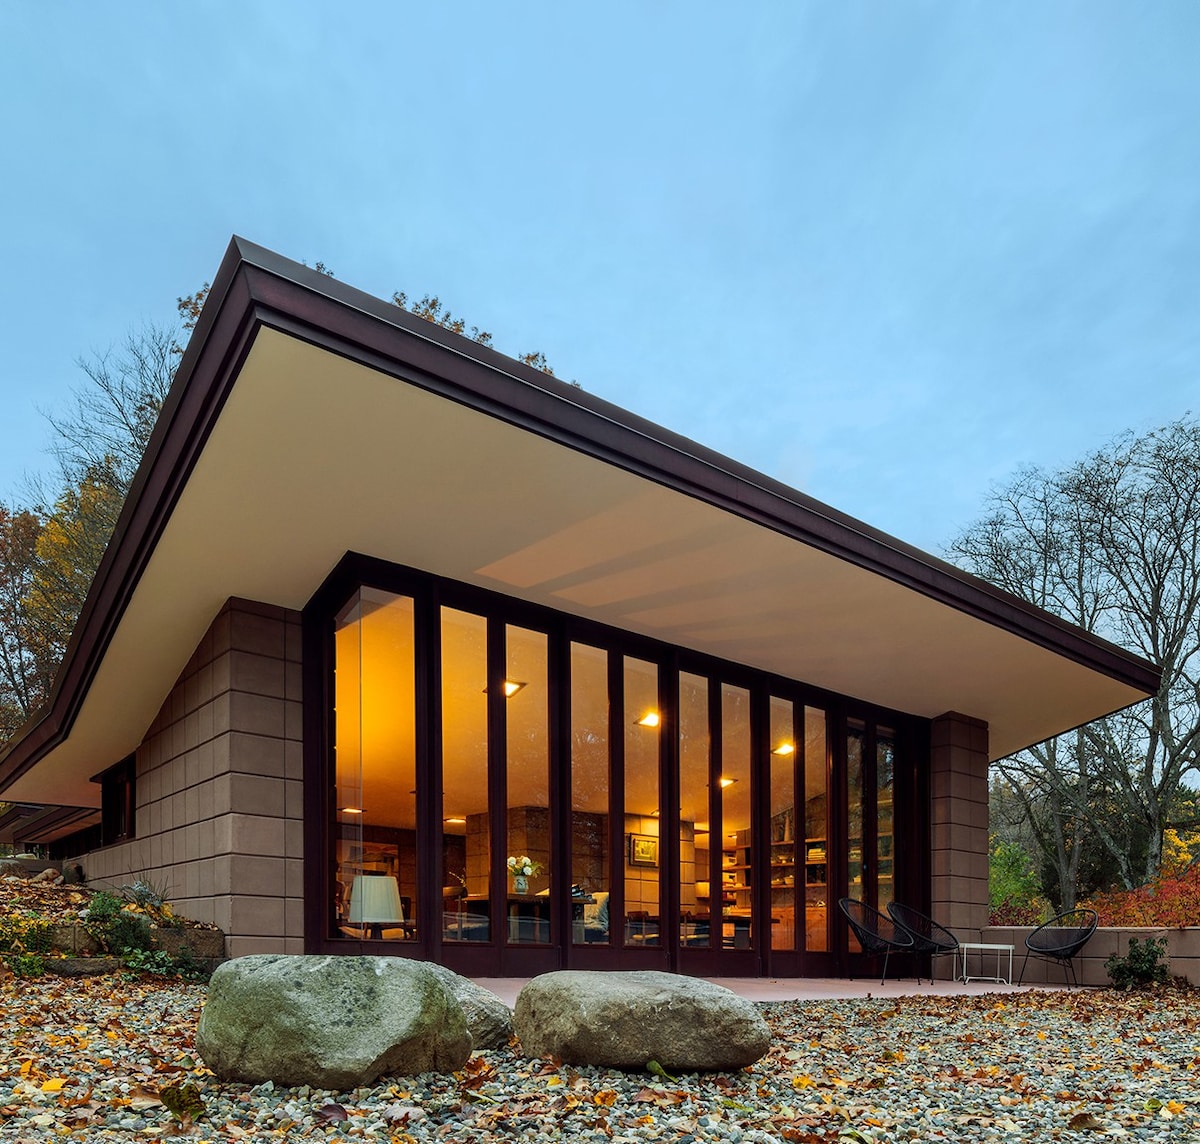 Impozantní cihlový dům architekta Franka Lloyda Wrighta je zasazen v přírodě a celou jednu jeho stěnu tvoří okna sahající od podlahy až ke stropu.